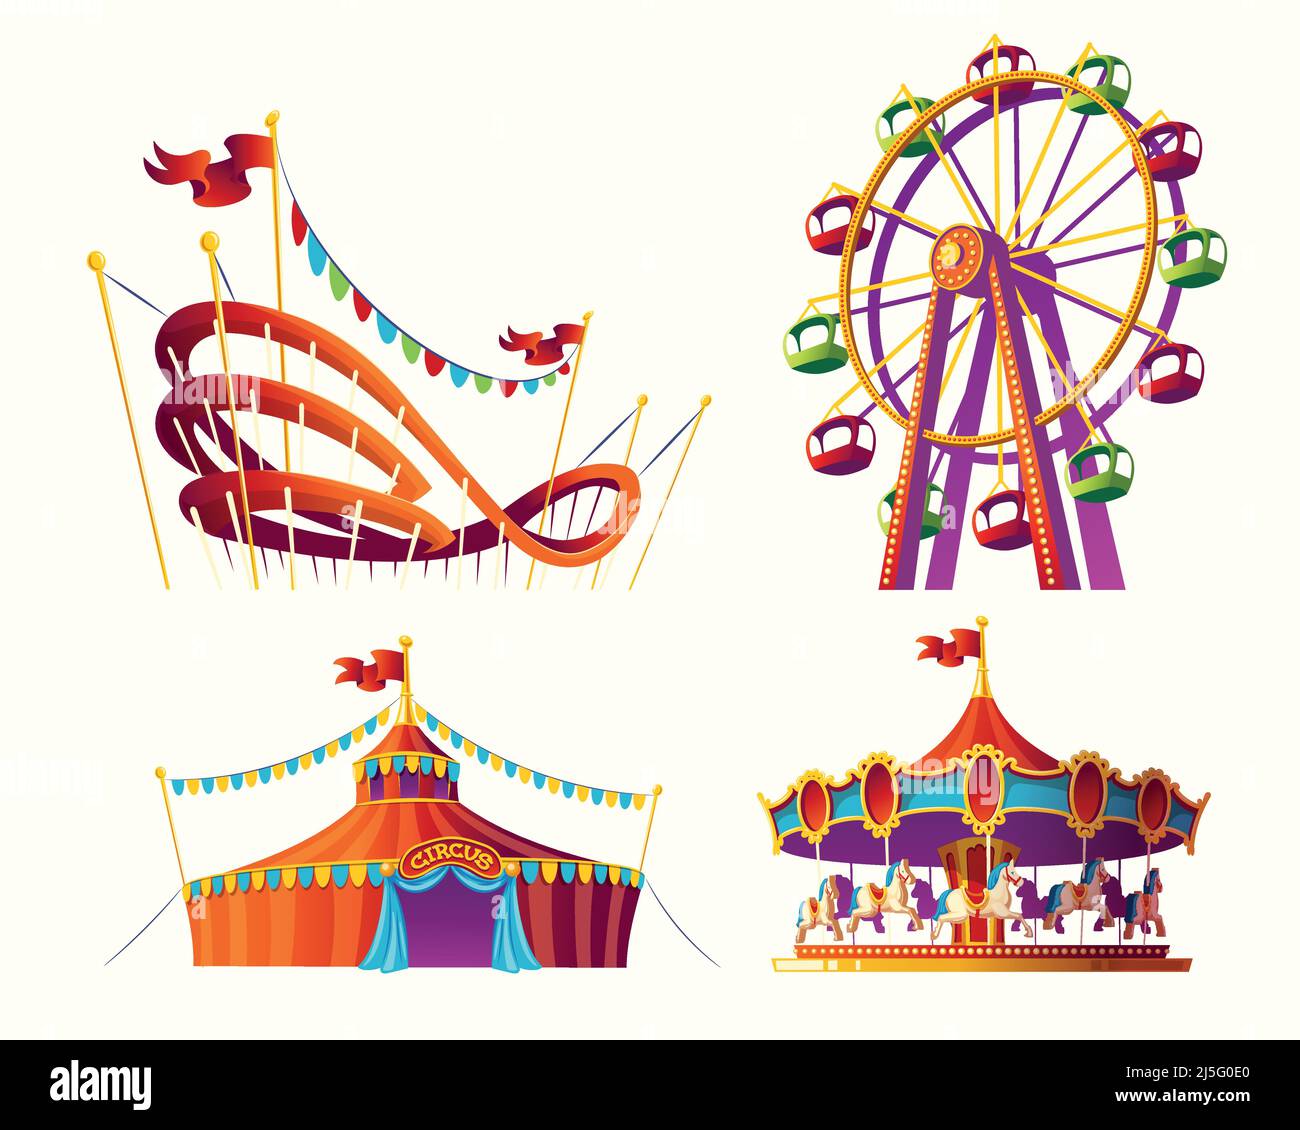 Ensemble d'illustrations vectorielles pour un parc d'attractions - carrousel, tente, montagnes russes Illustration de Vecteur